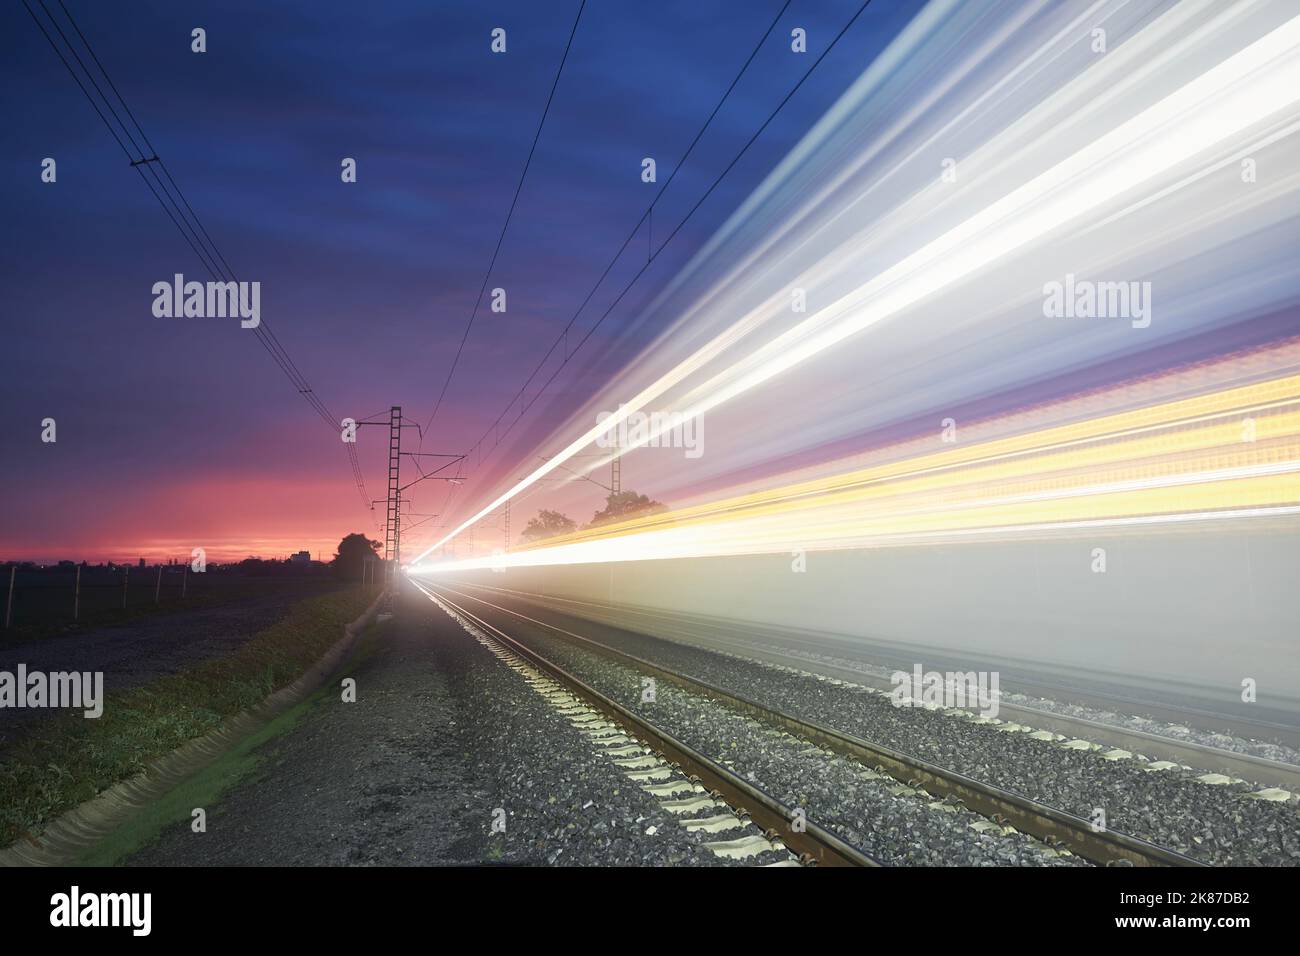 Moderne Eisenbahn bei schönem Sonnenaufgang. Leichte Spur des Hochgeschwindigkeitszuges auf der Eisenbahnstrecke. Umzug moderner Intercity-Personenzug. Stockfoto